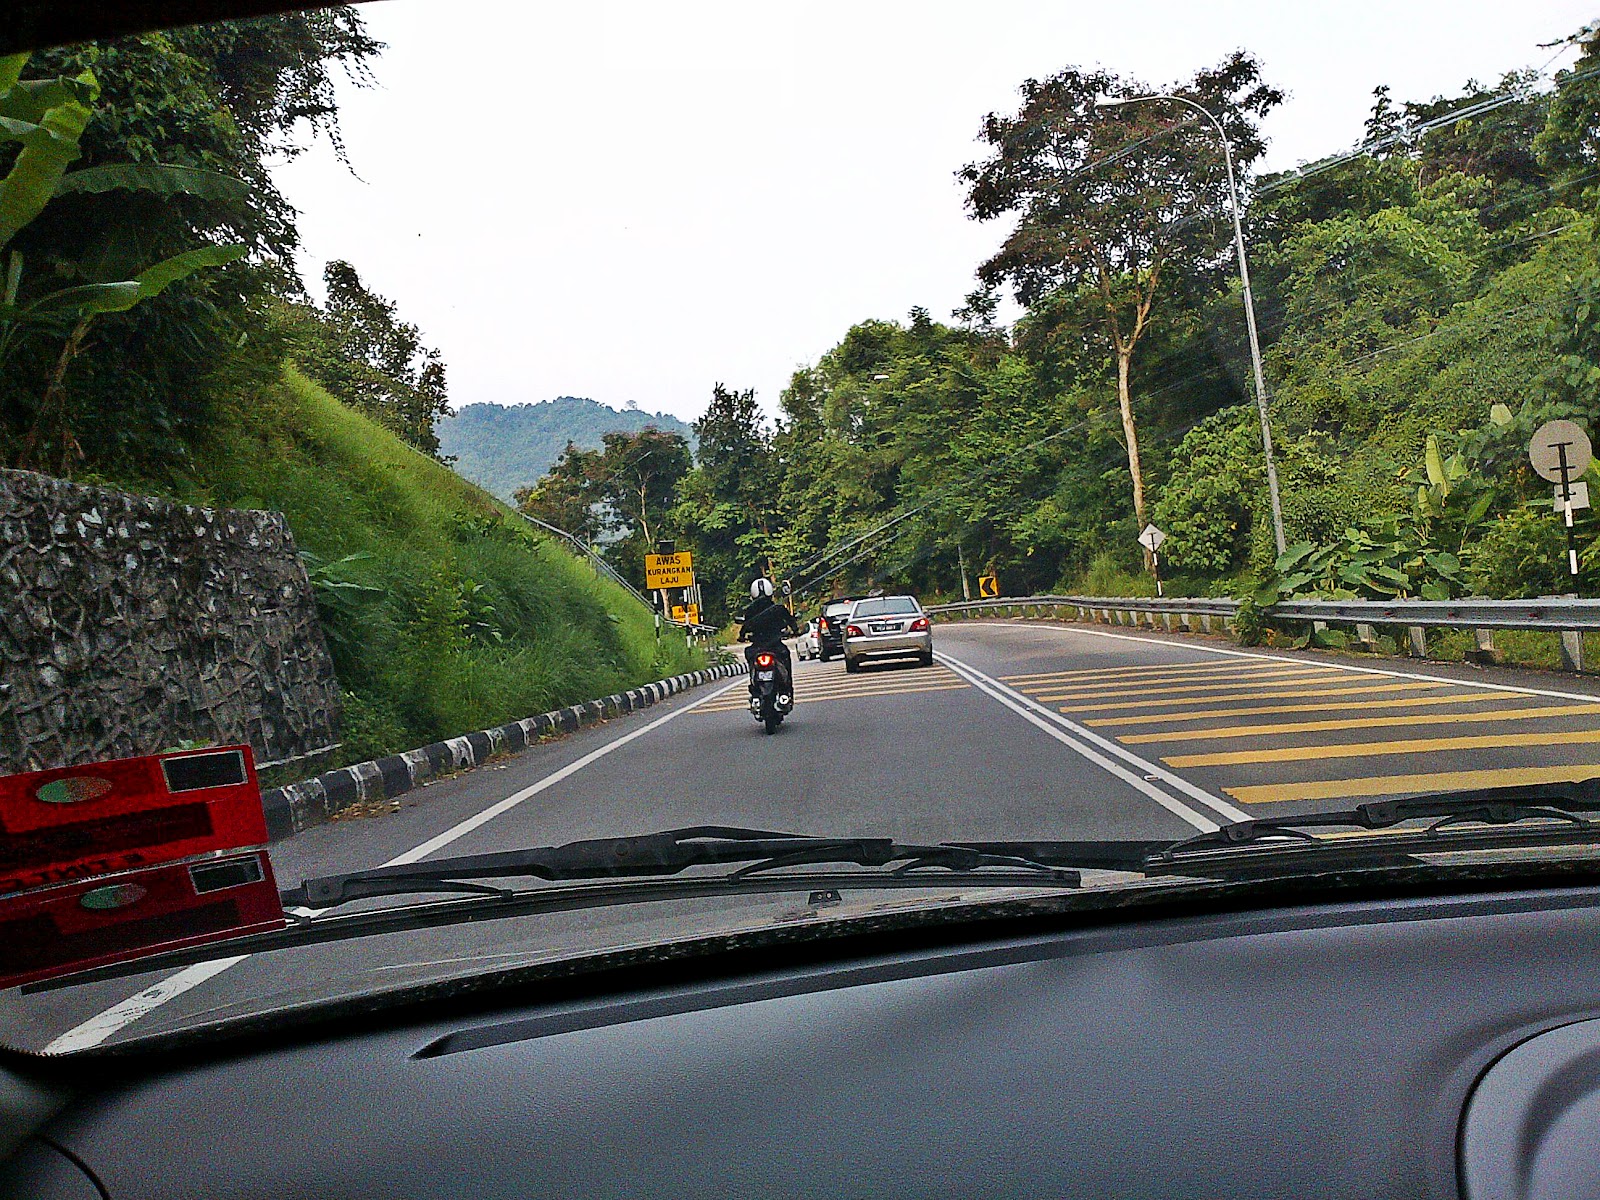 Jalan-jalan Penang : Balik Pulau, Durian & Laksa Janggus ...